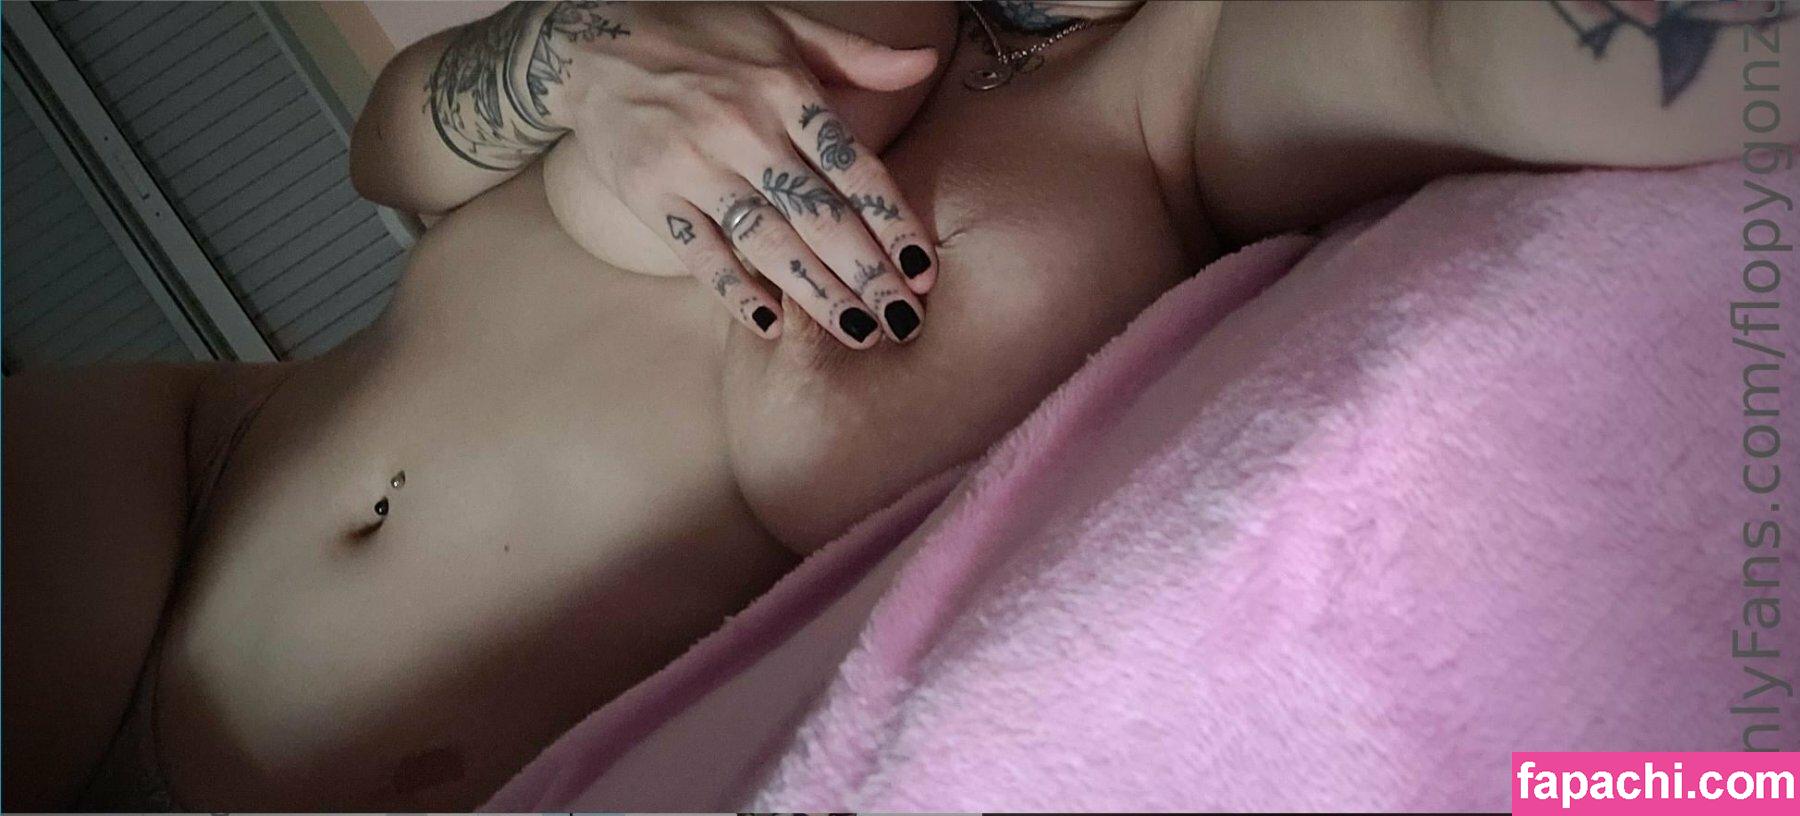 Florencia Gonzalez / flopygonzalez / gonzalezflopyok leaked nude photo #0155 from OnlyFans/Patreon